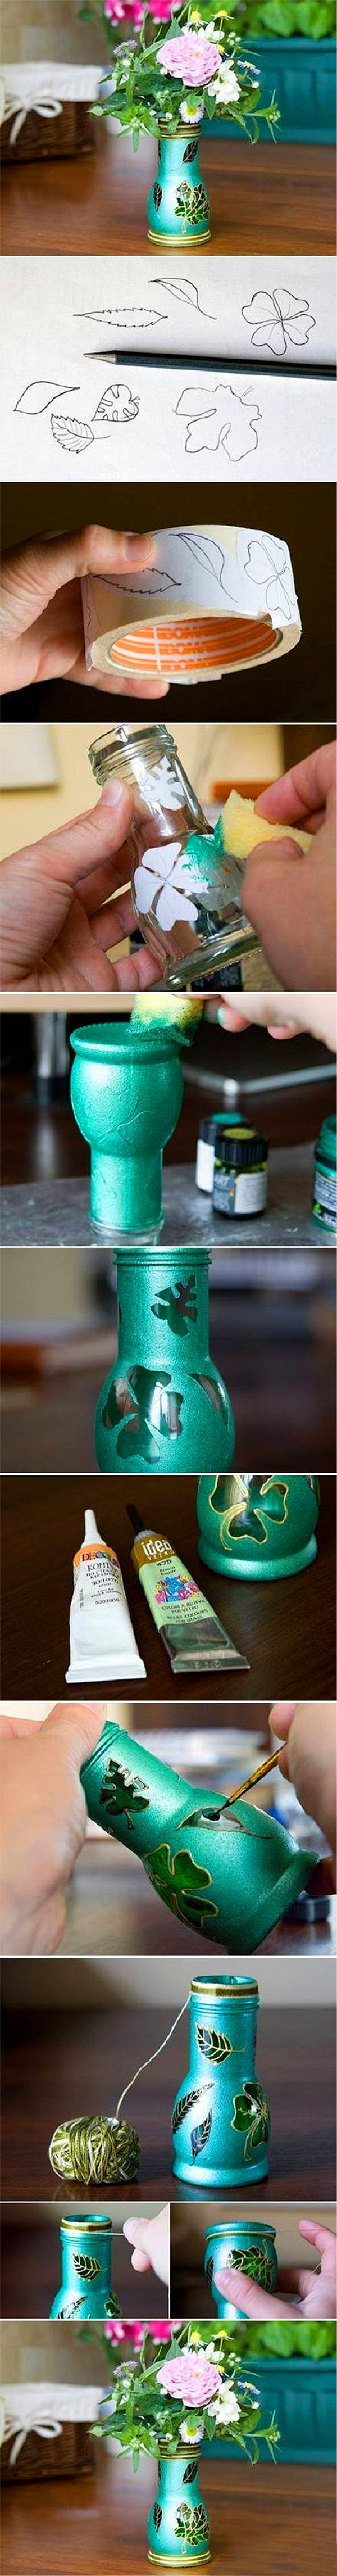 玻璃瓶绘画技巧，用剩的瓶瓶罐罐有救了#d...